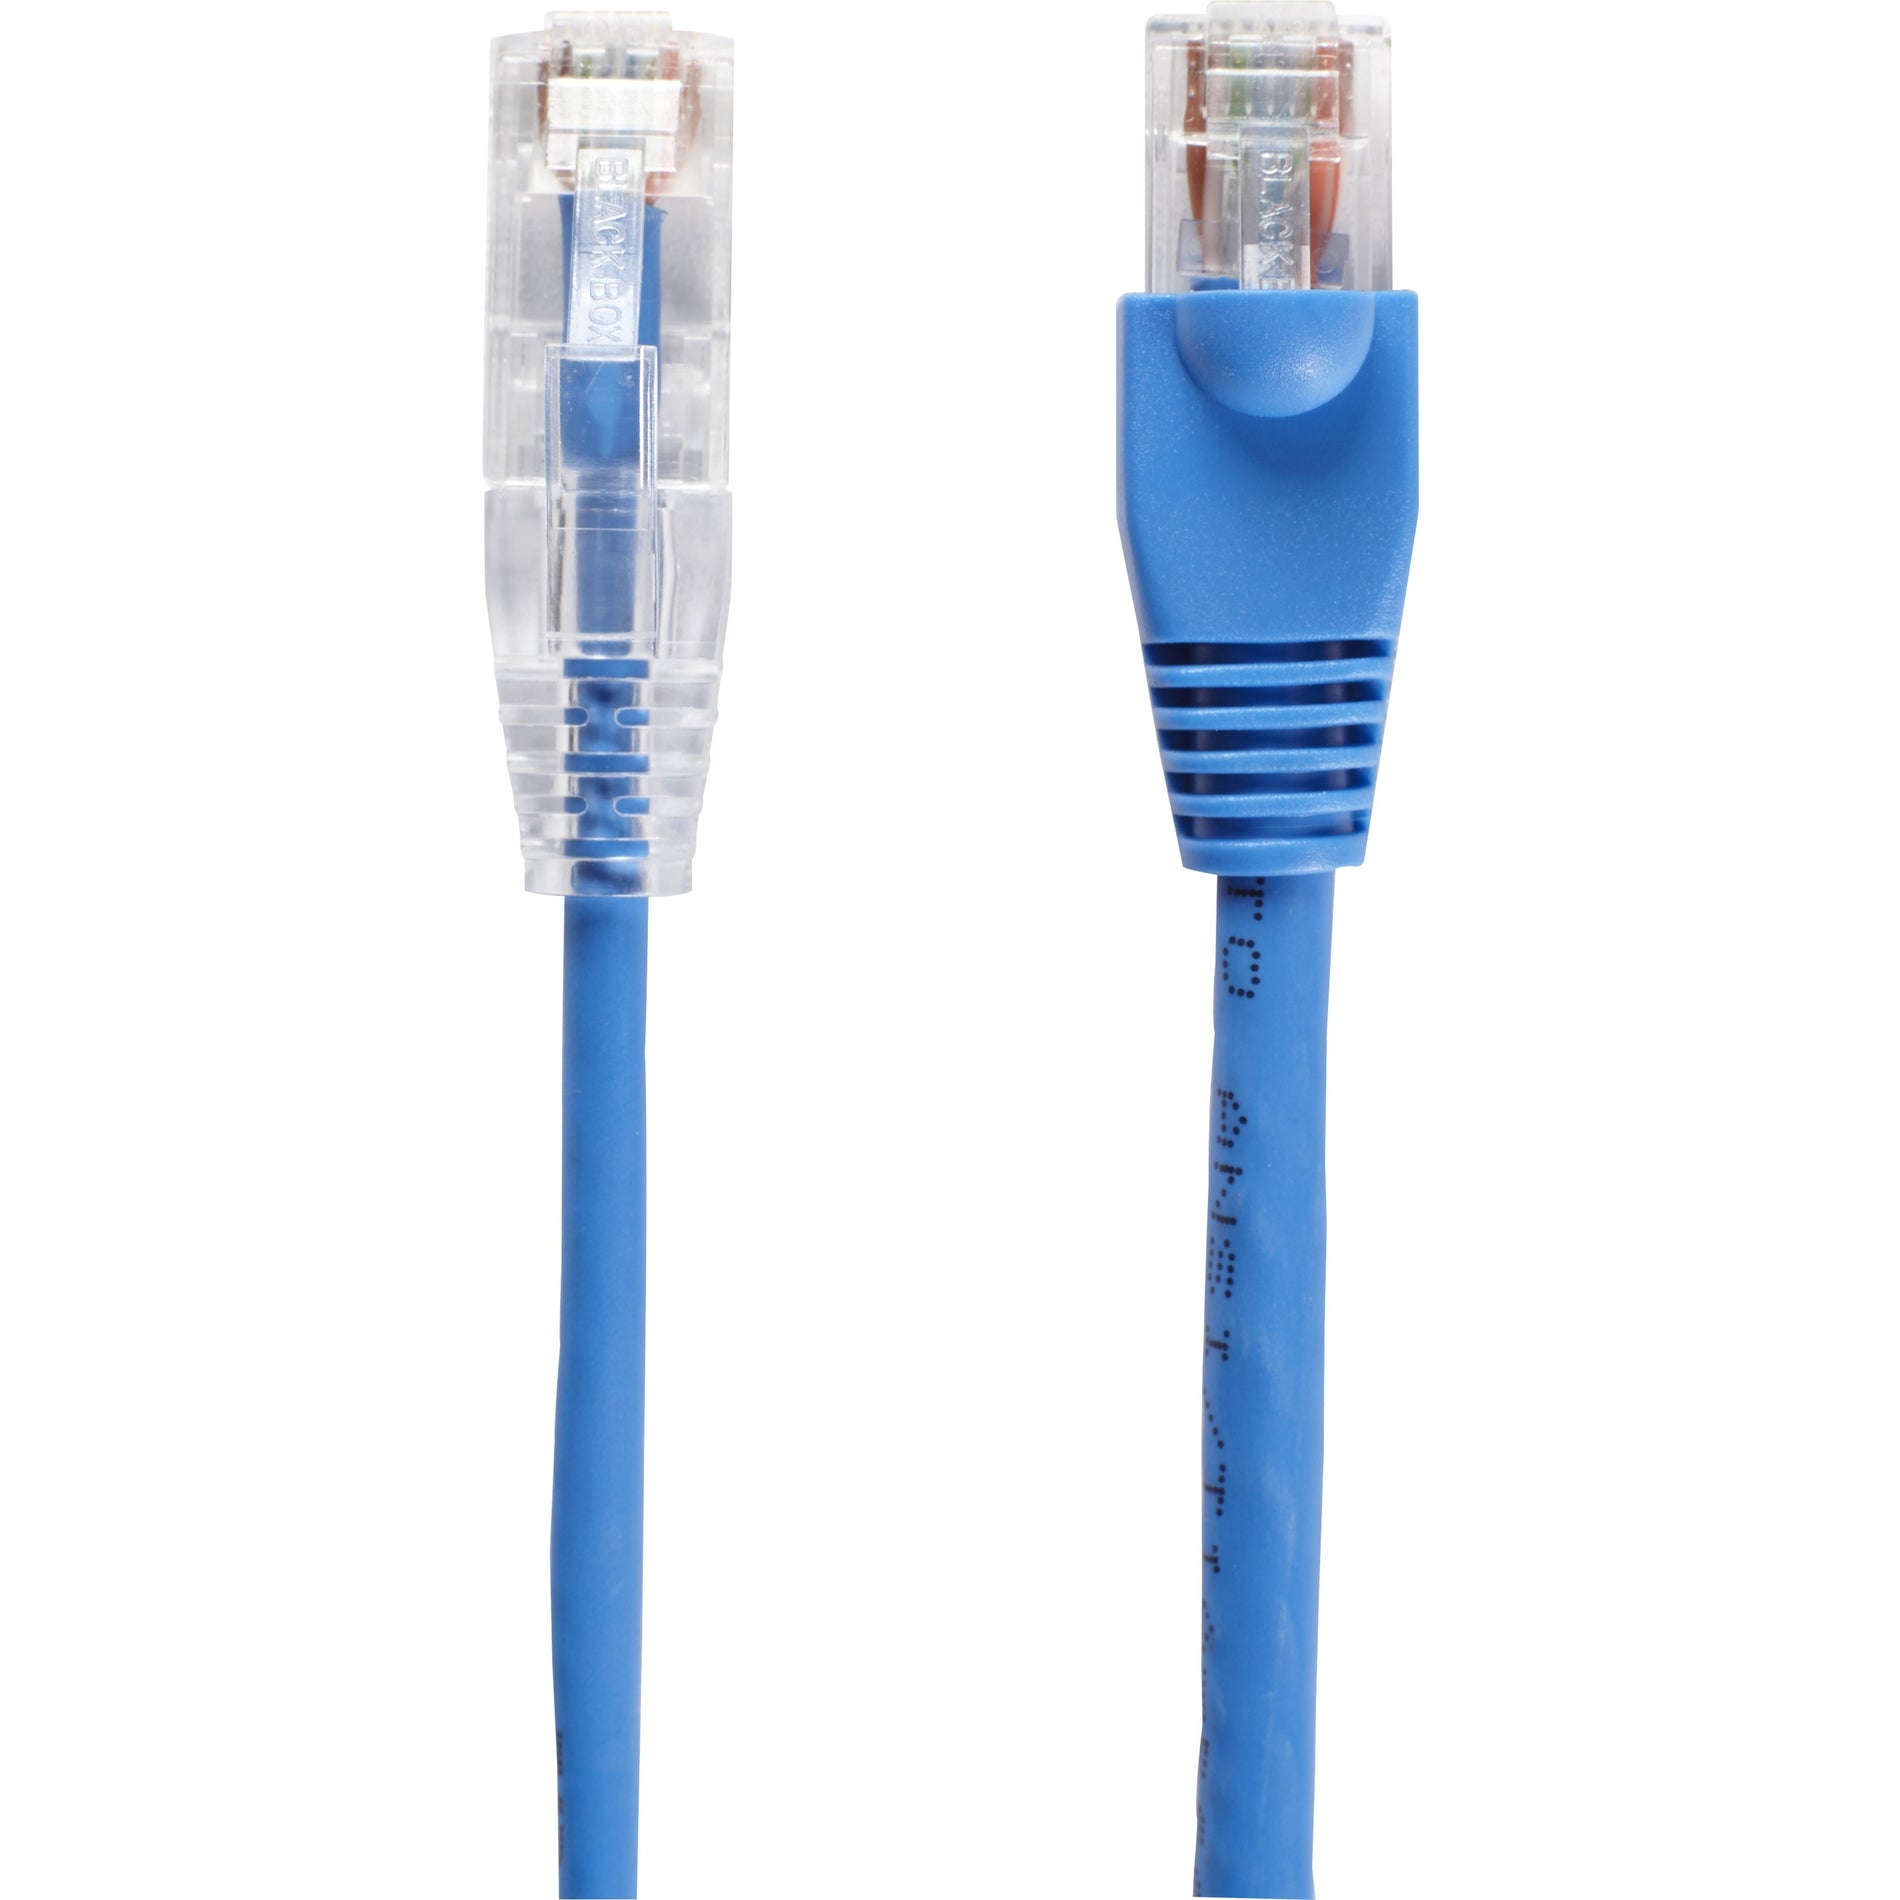 Black Box C6APC28-BL-03 Slim-Net Cat.6a UTP Patch Network Cable, 3 ft, 10 Gbit/s